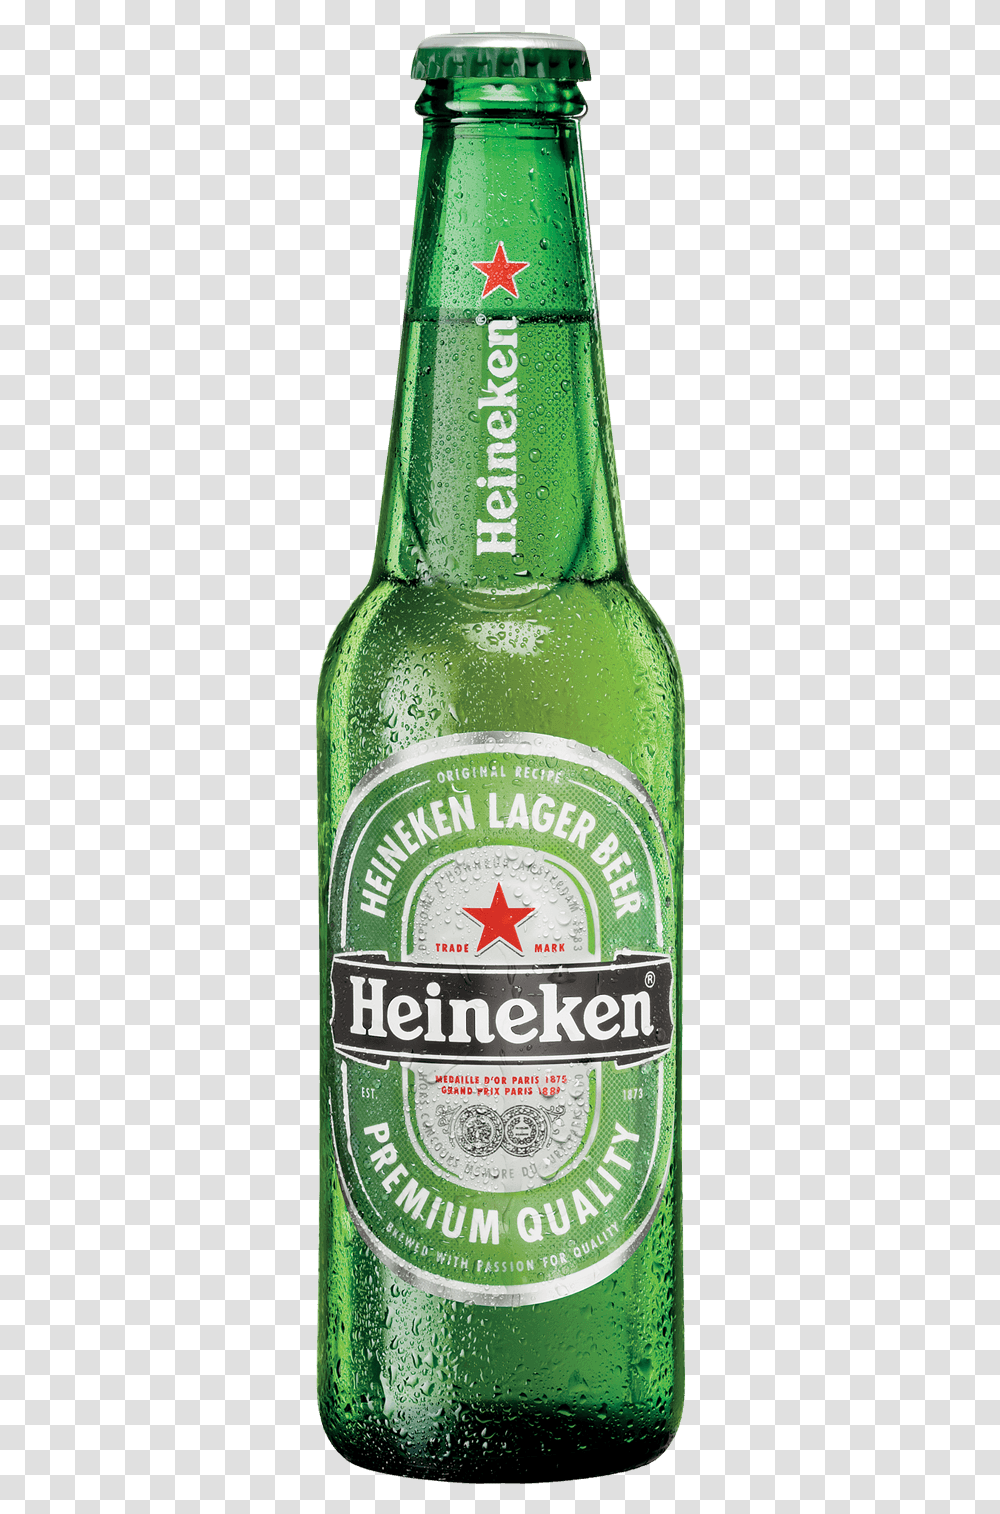 Heineken Bottle Background Download Background Heineken Bottle, Alcohol, Beverage, Drink, Beer Transparent Png